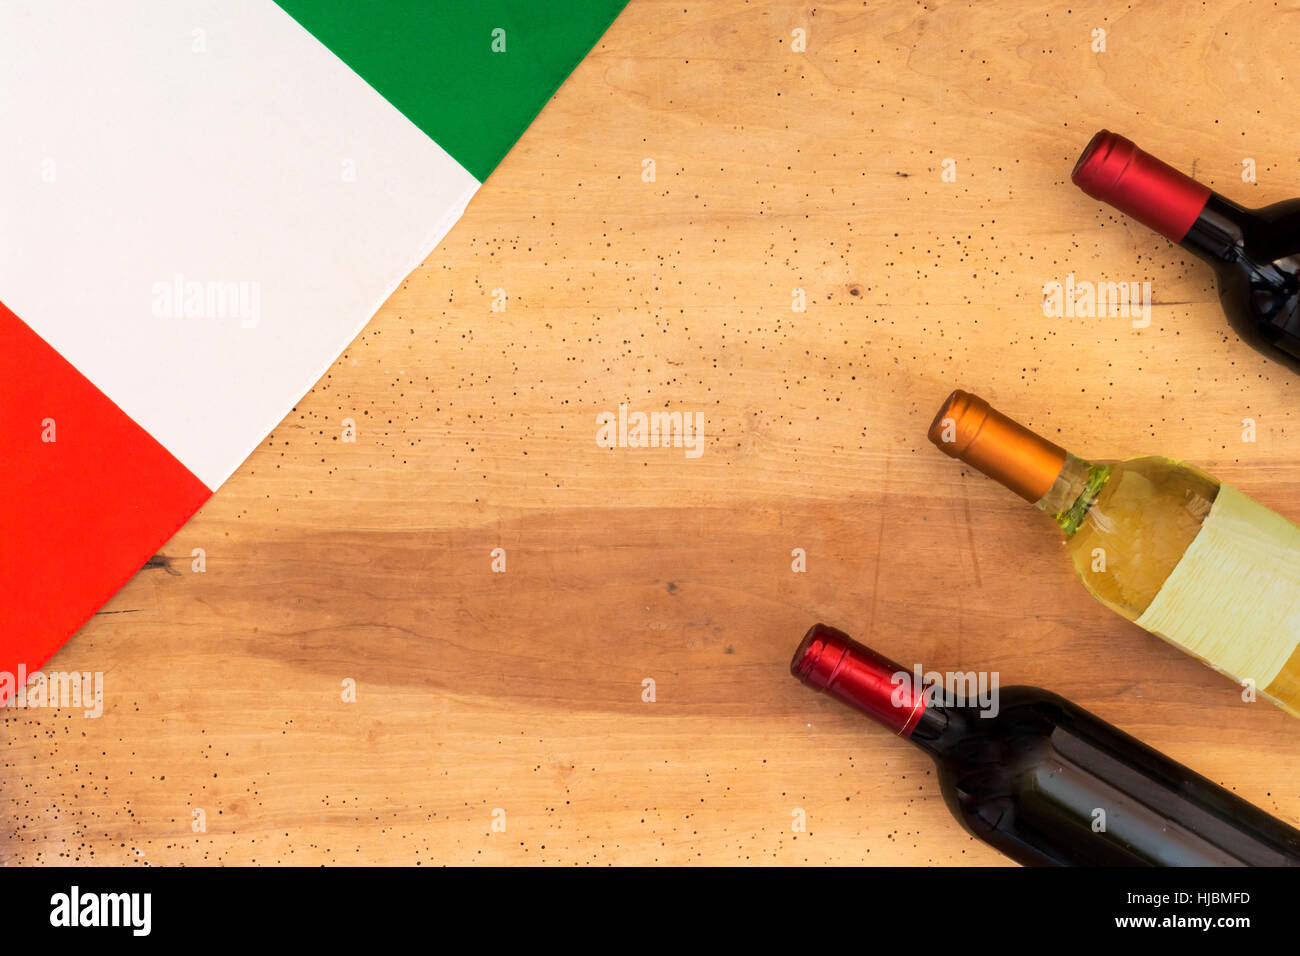 Italian wine bottles on wooden background Stock Photo